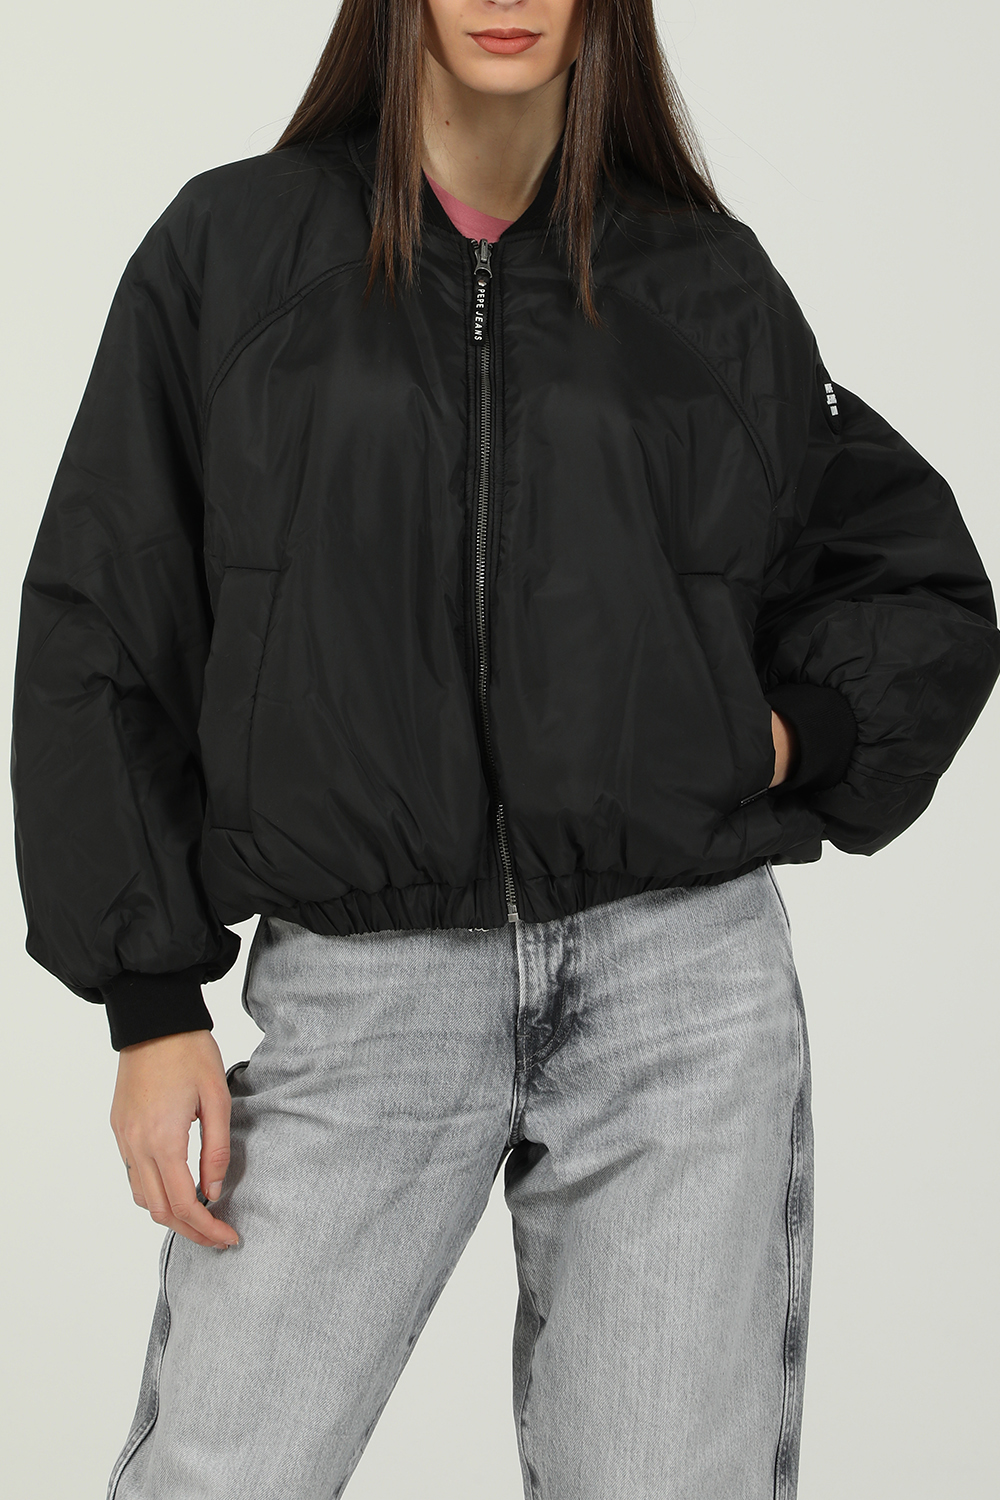 Γυναικεία/Ρούχα/Πανωφόρια/Τζάκετς PEPE JEANS - Γυναικείο jacket PEPE JEANS AIDA μαύρο